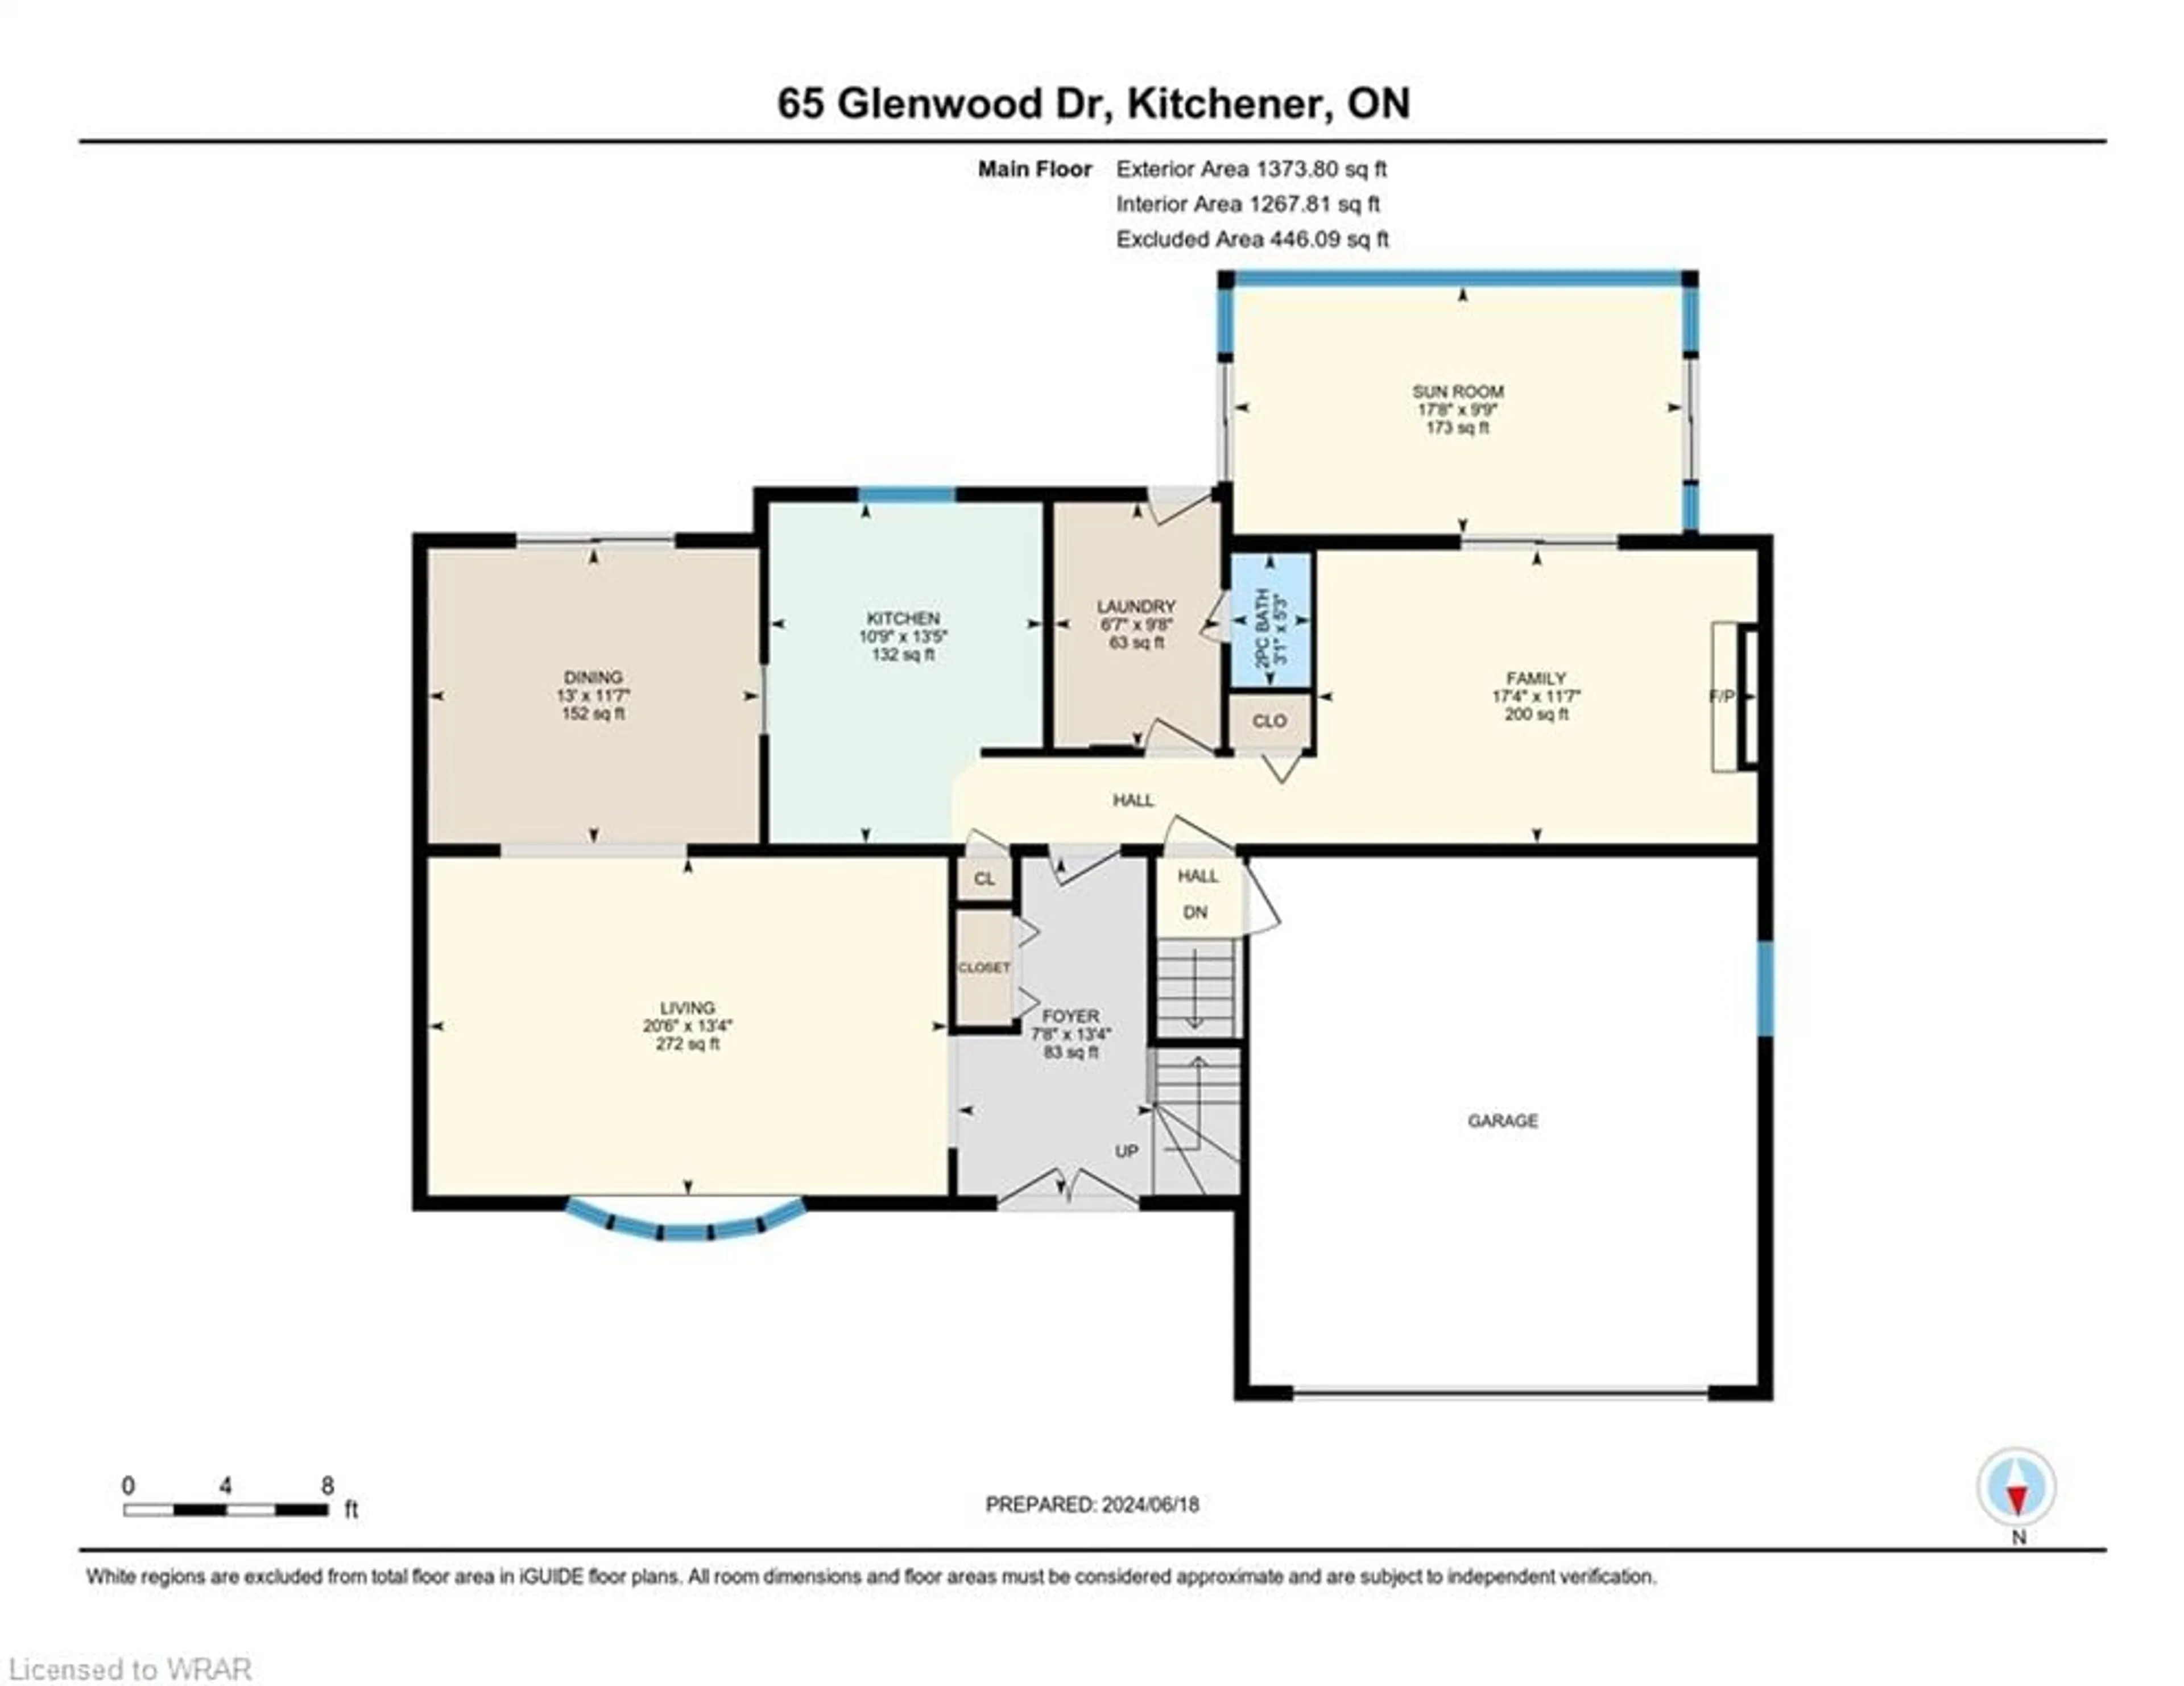 Floor plan for 65 Glenwood Dr, Kitchener Ontario N2A 1H8